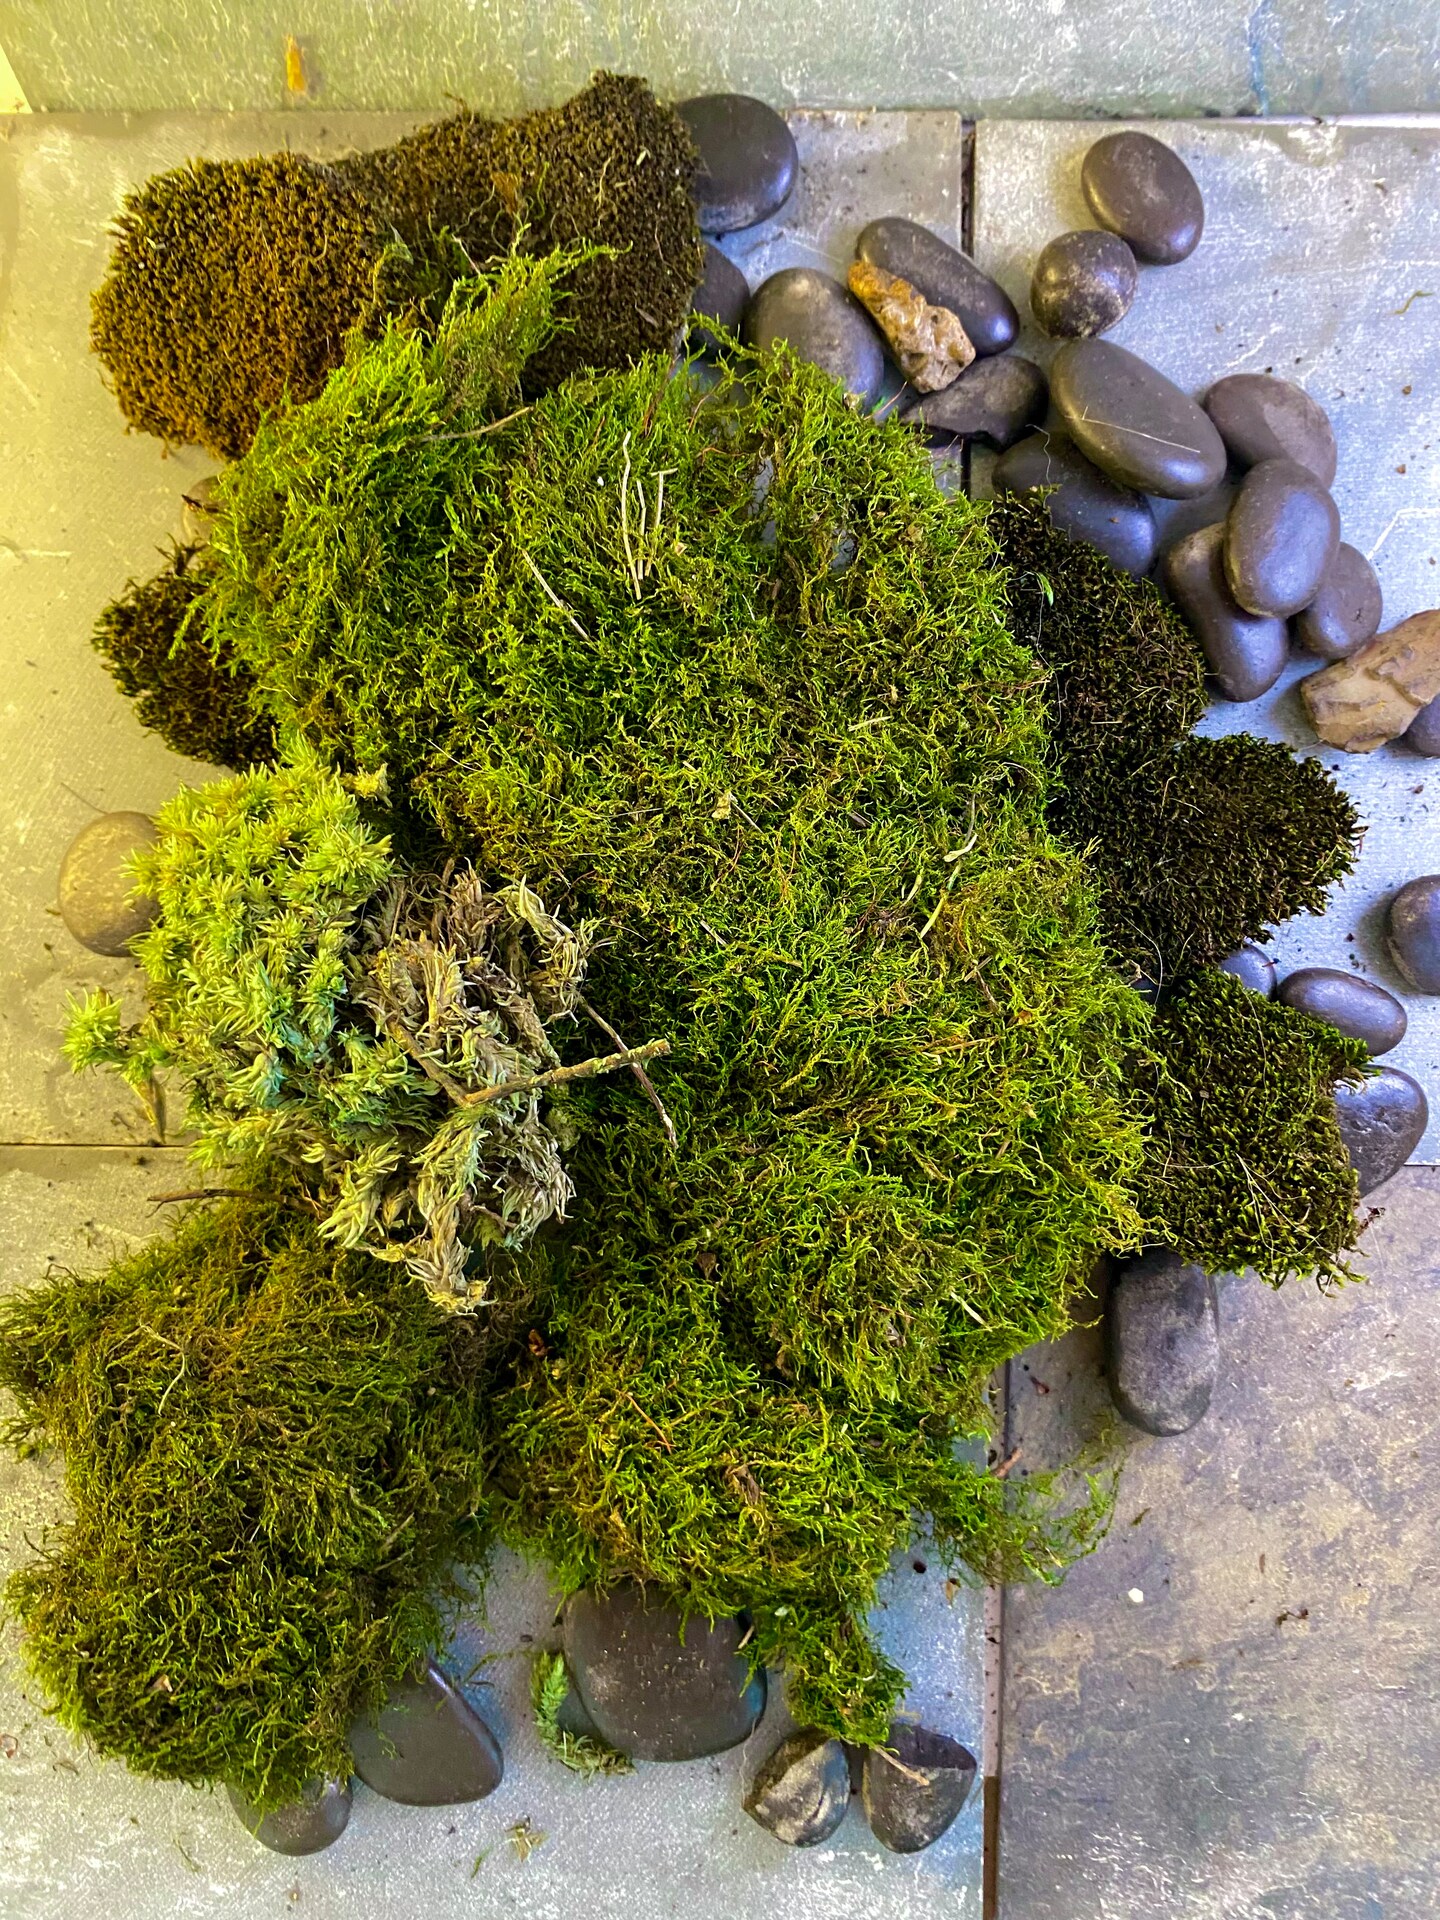 sheet moss great for terrariums houseplants fairy gardens a full